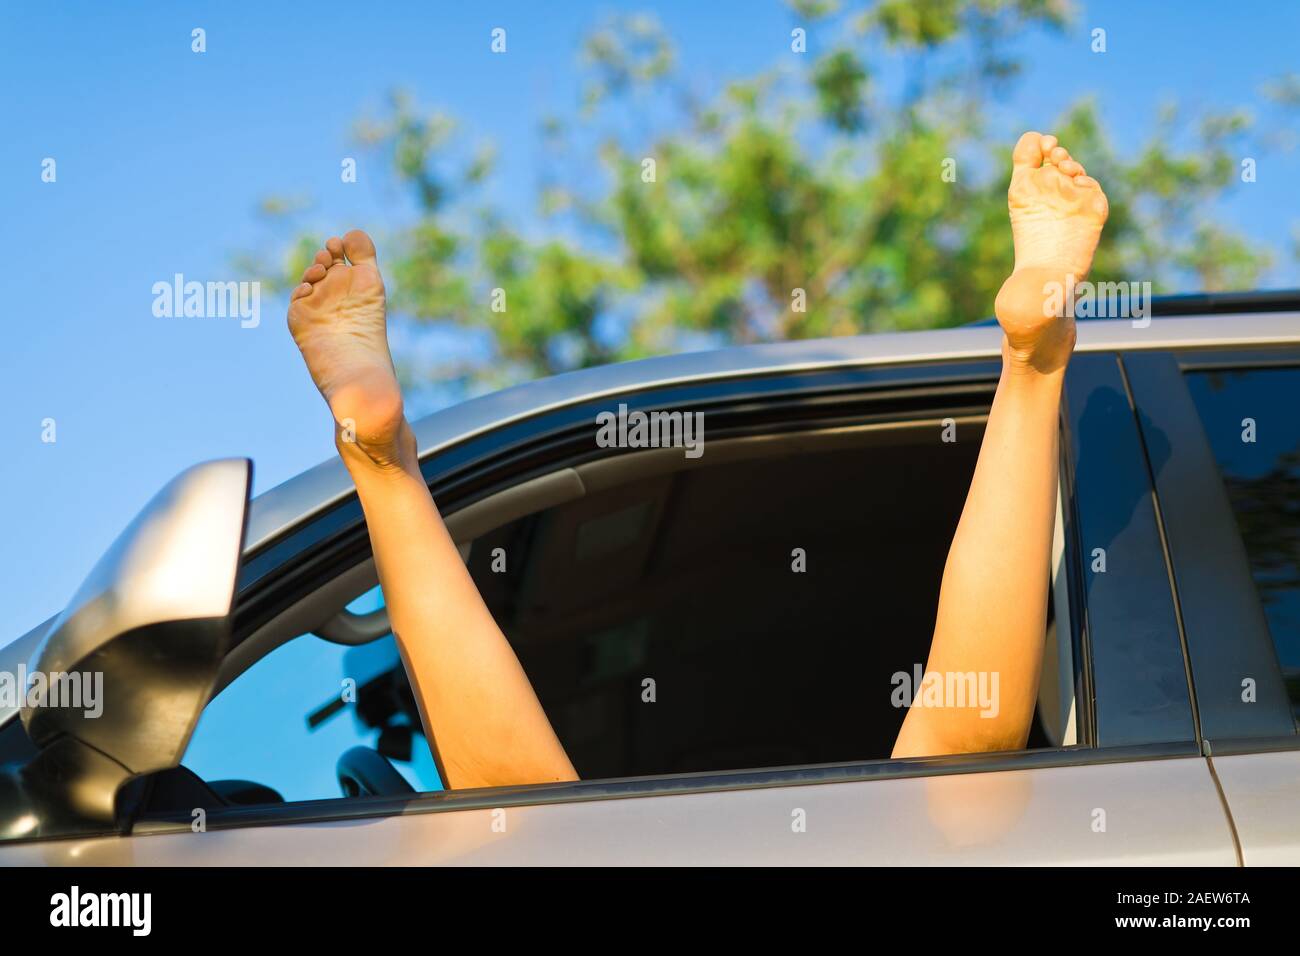 Prostituée à étendre les jambes exposées hors de fenêtre de voiture, pieds nus Banque D'Images